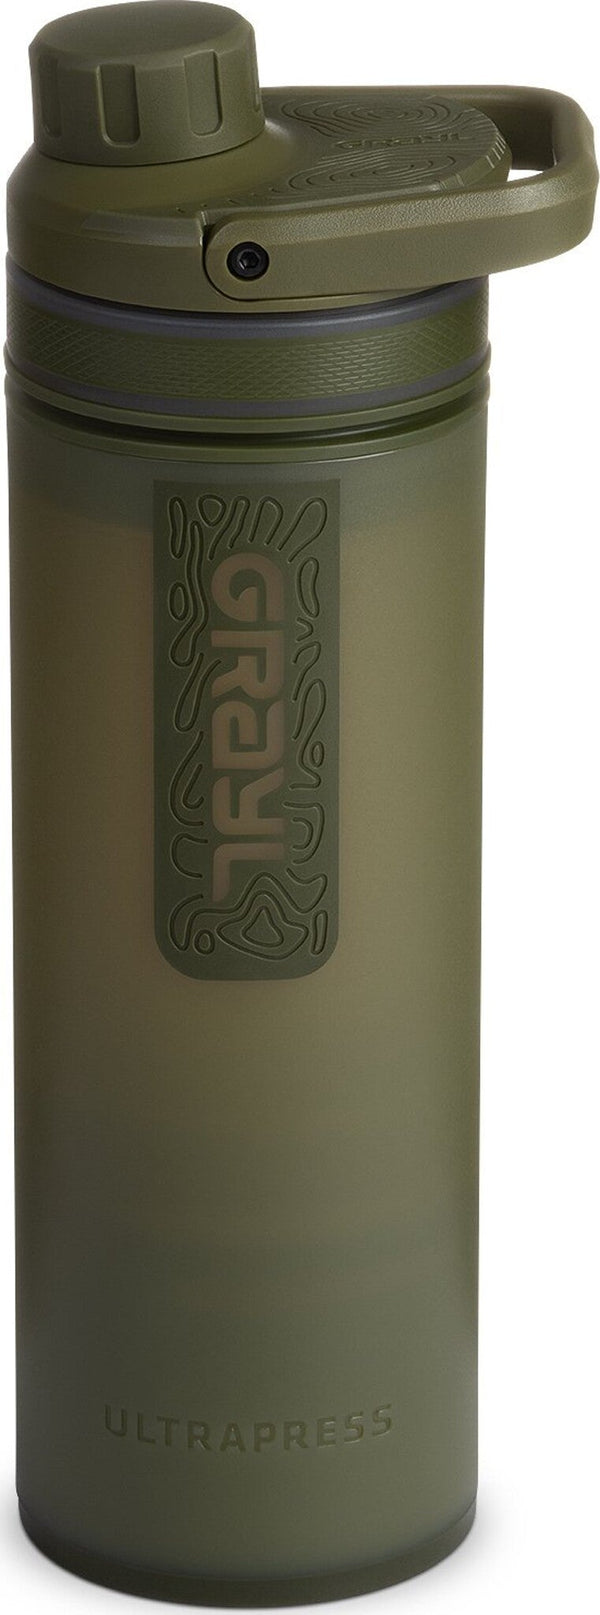 Grayl UltraPress® Water Purifier Bottle